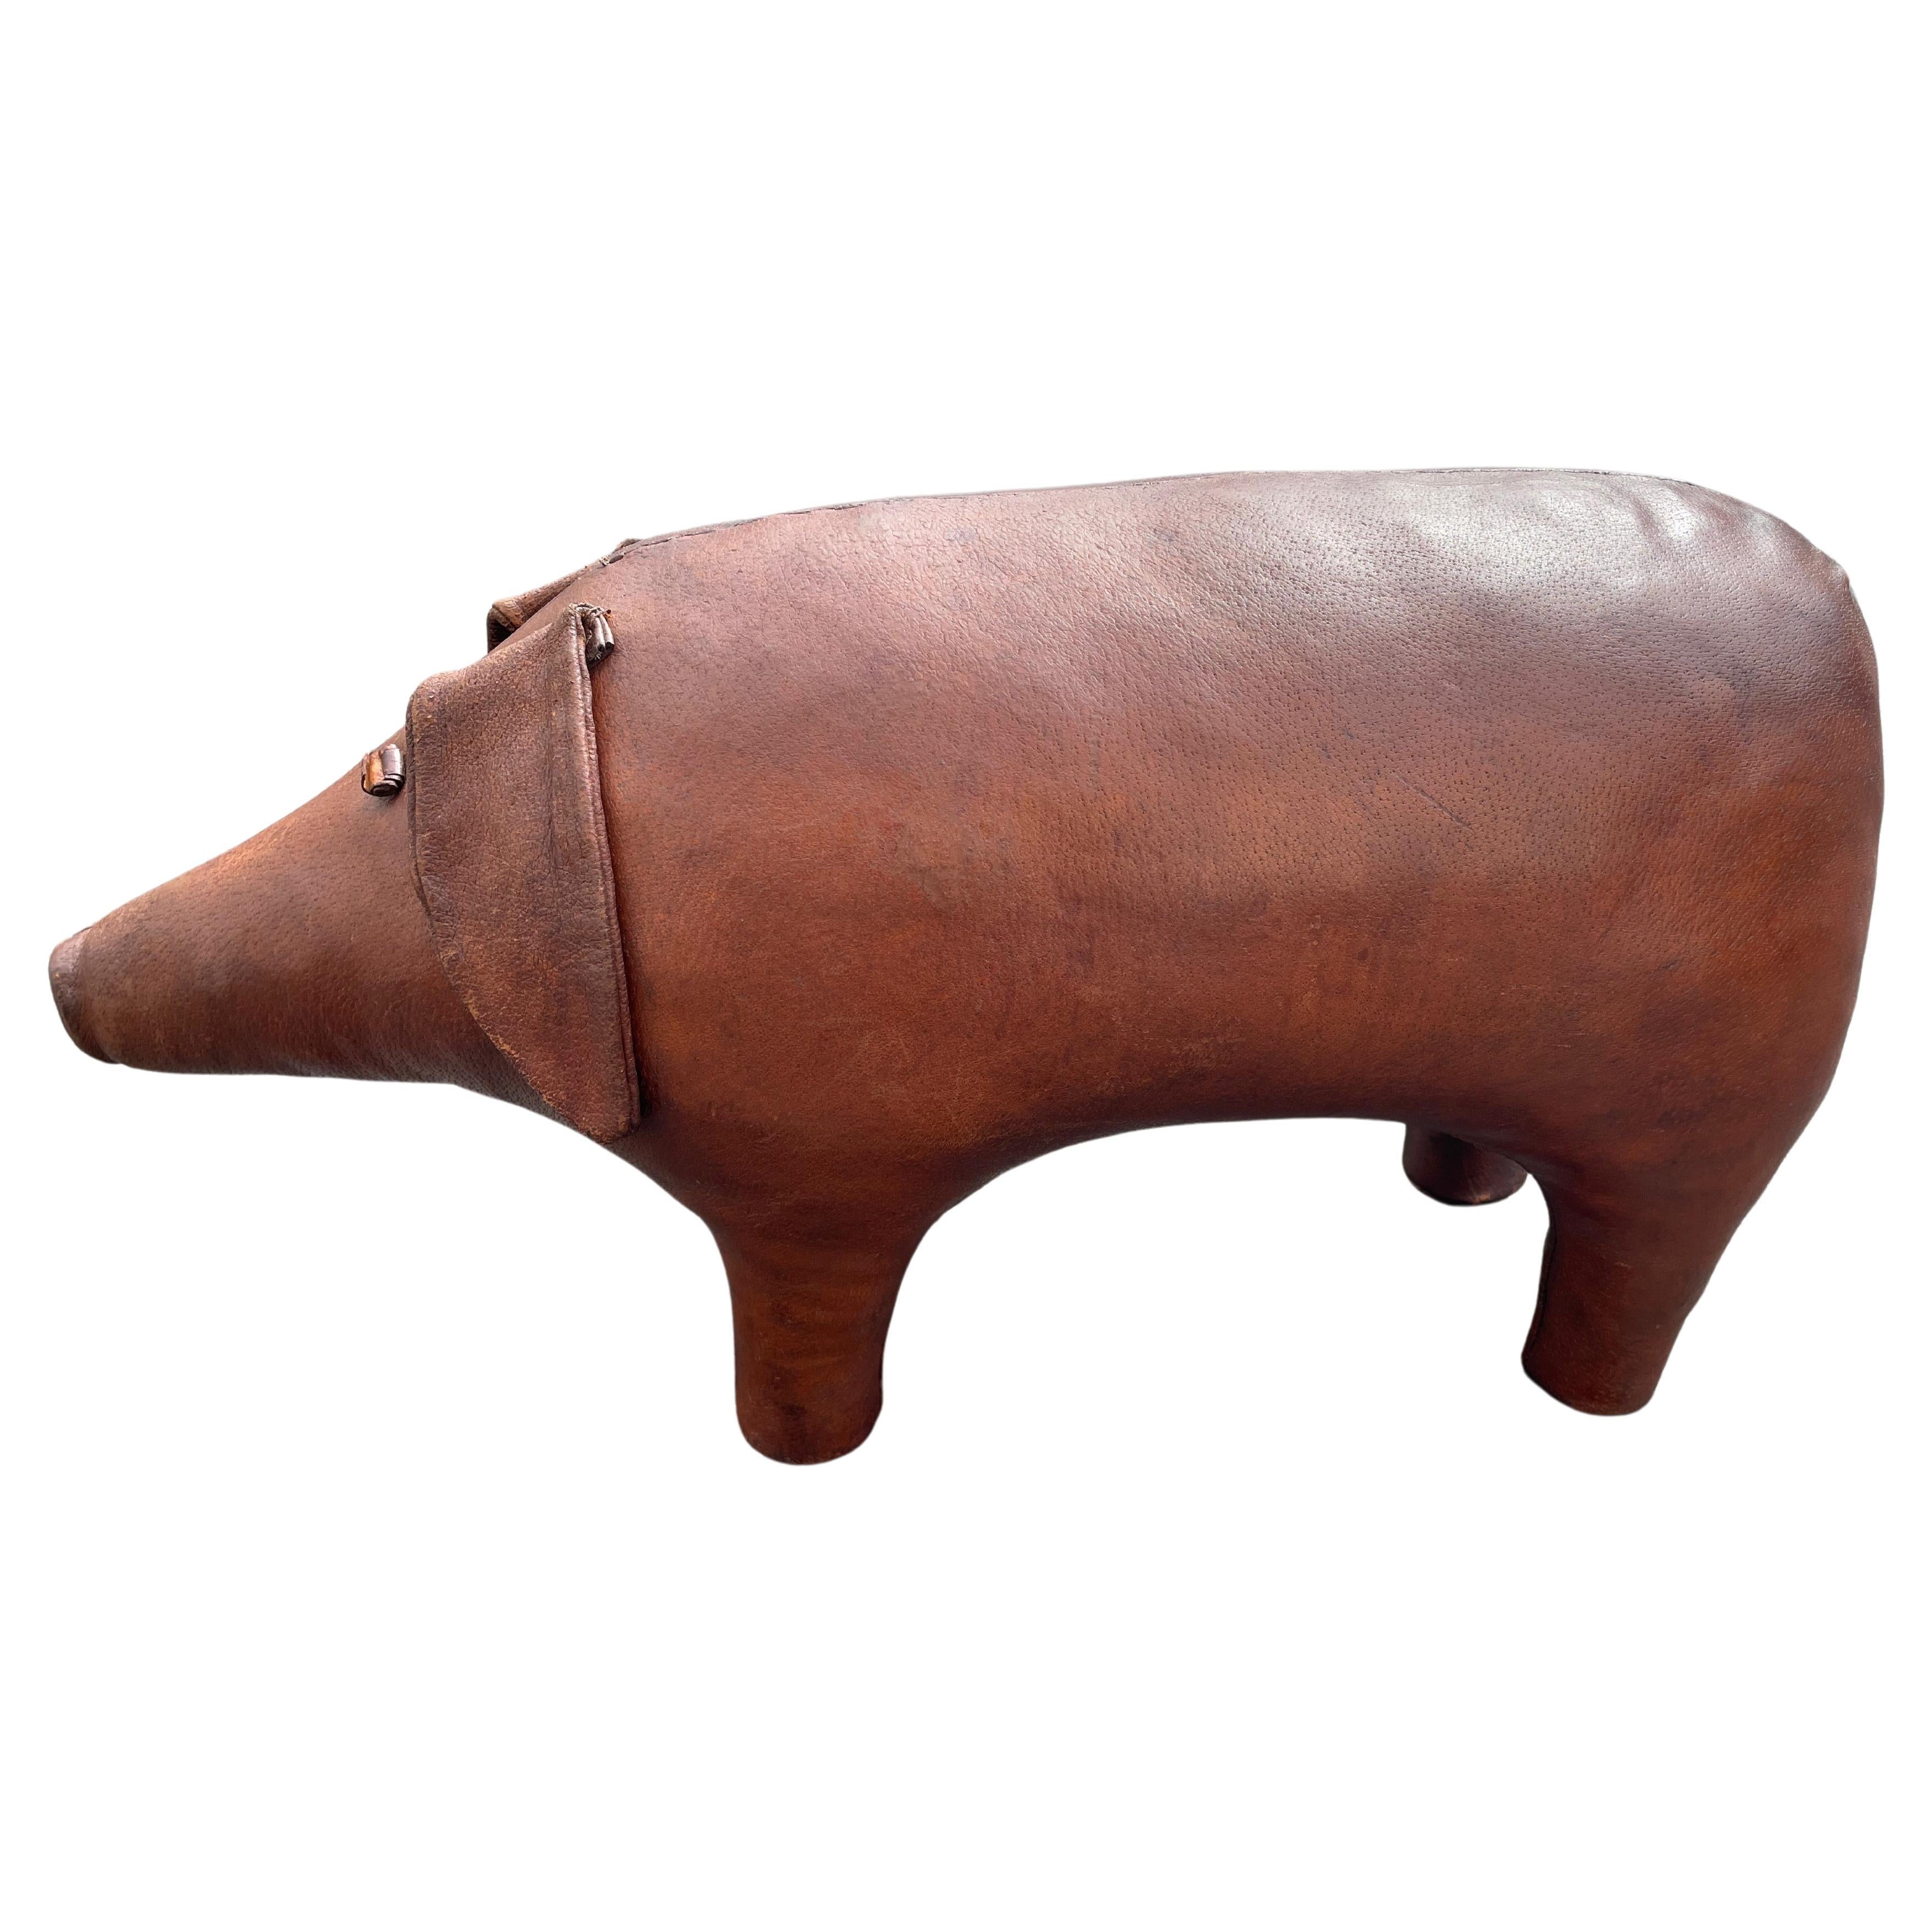 Grand pouf PIG par Dimitri Omersa., années 1960. Abercrombie & Fitch en vente